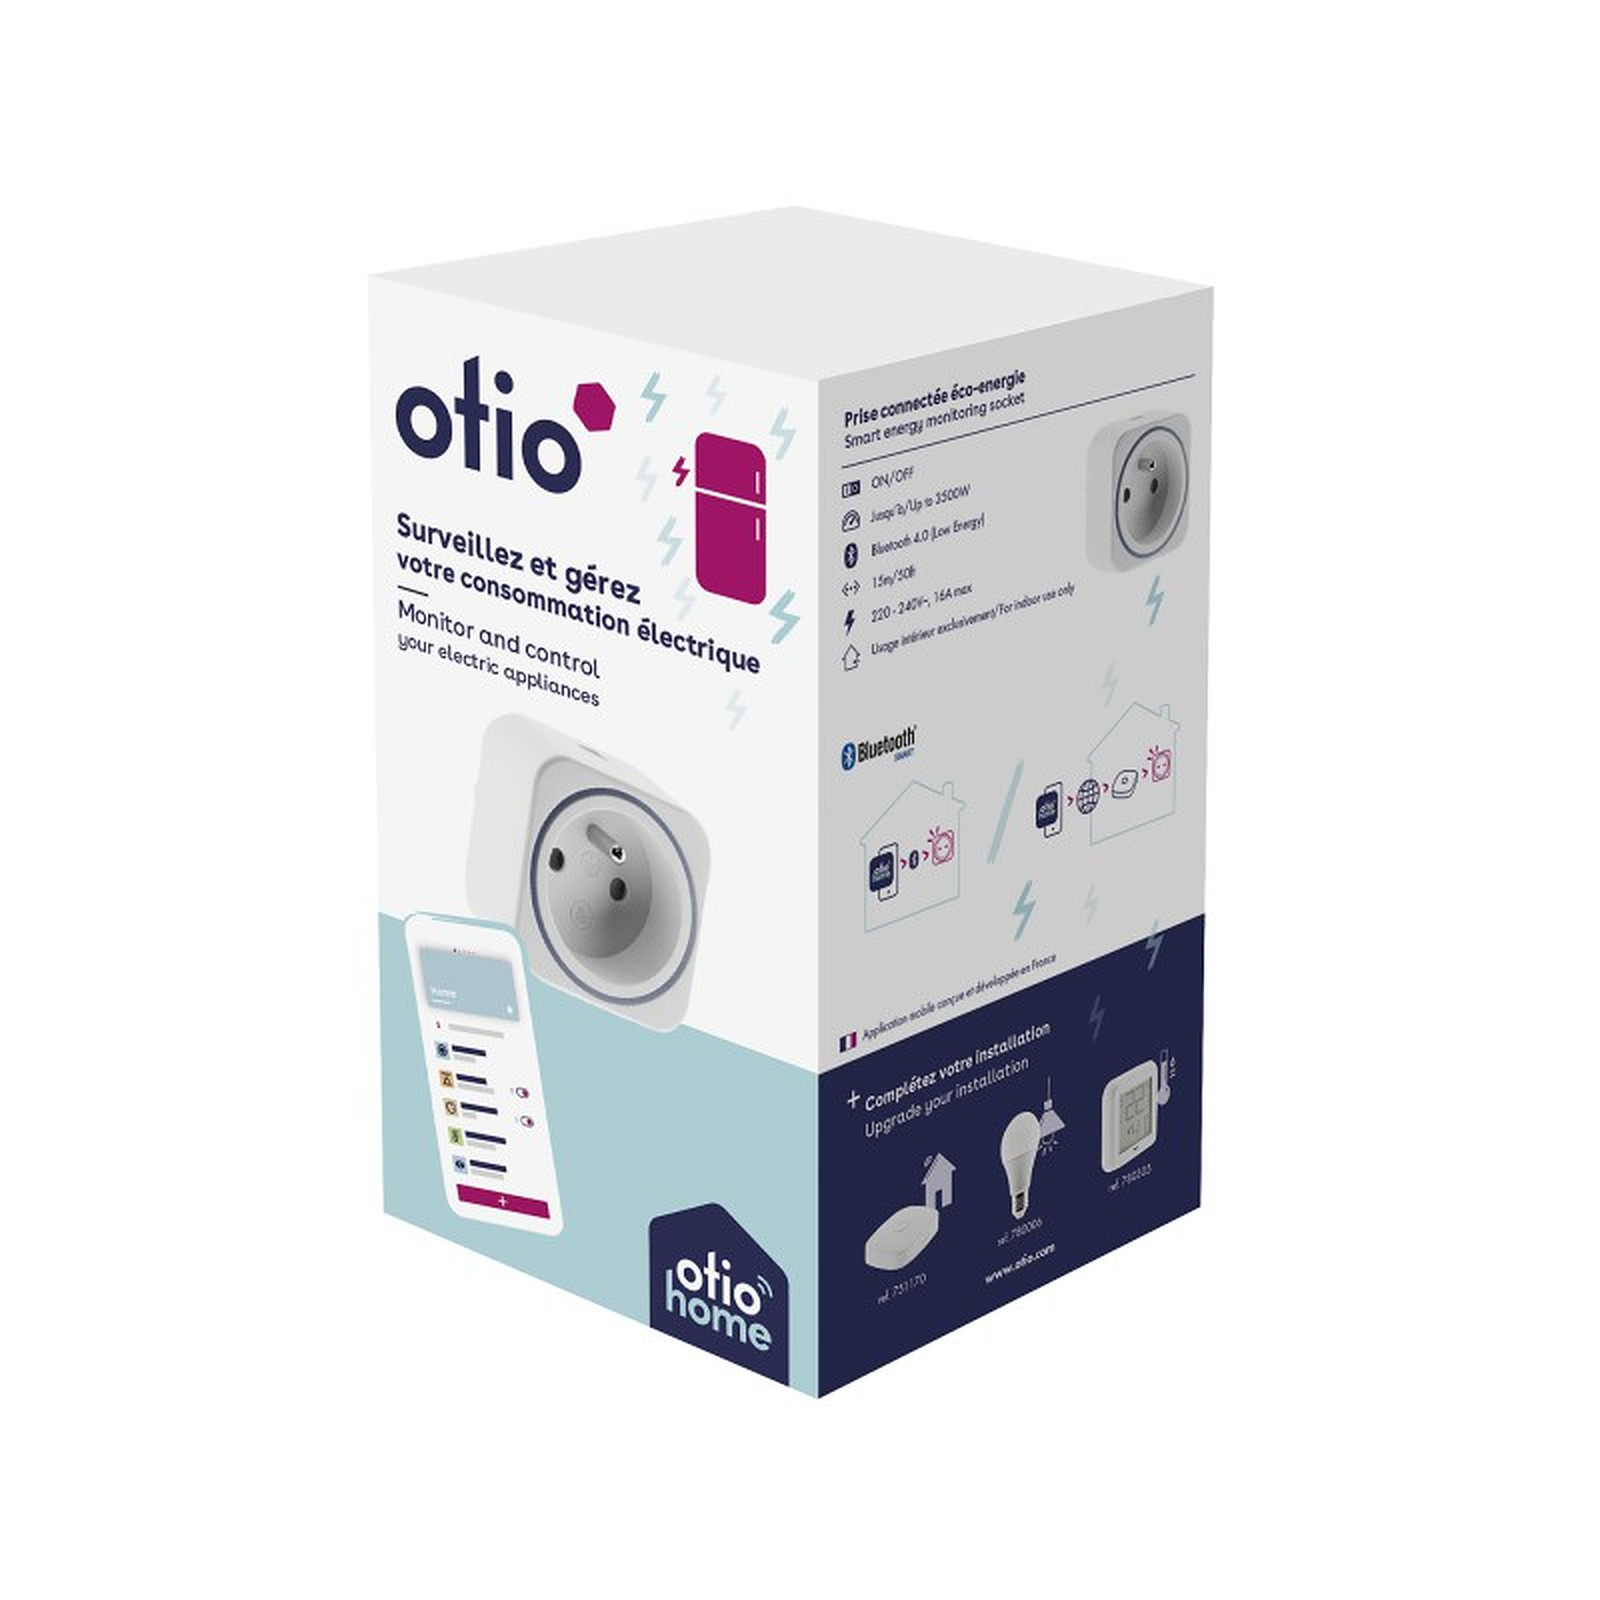 Otio-Prise connectee eco-energie Bluetooth - Otio - Prise connectee Otio